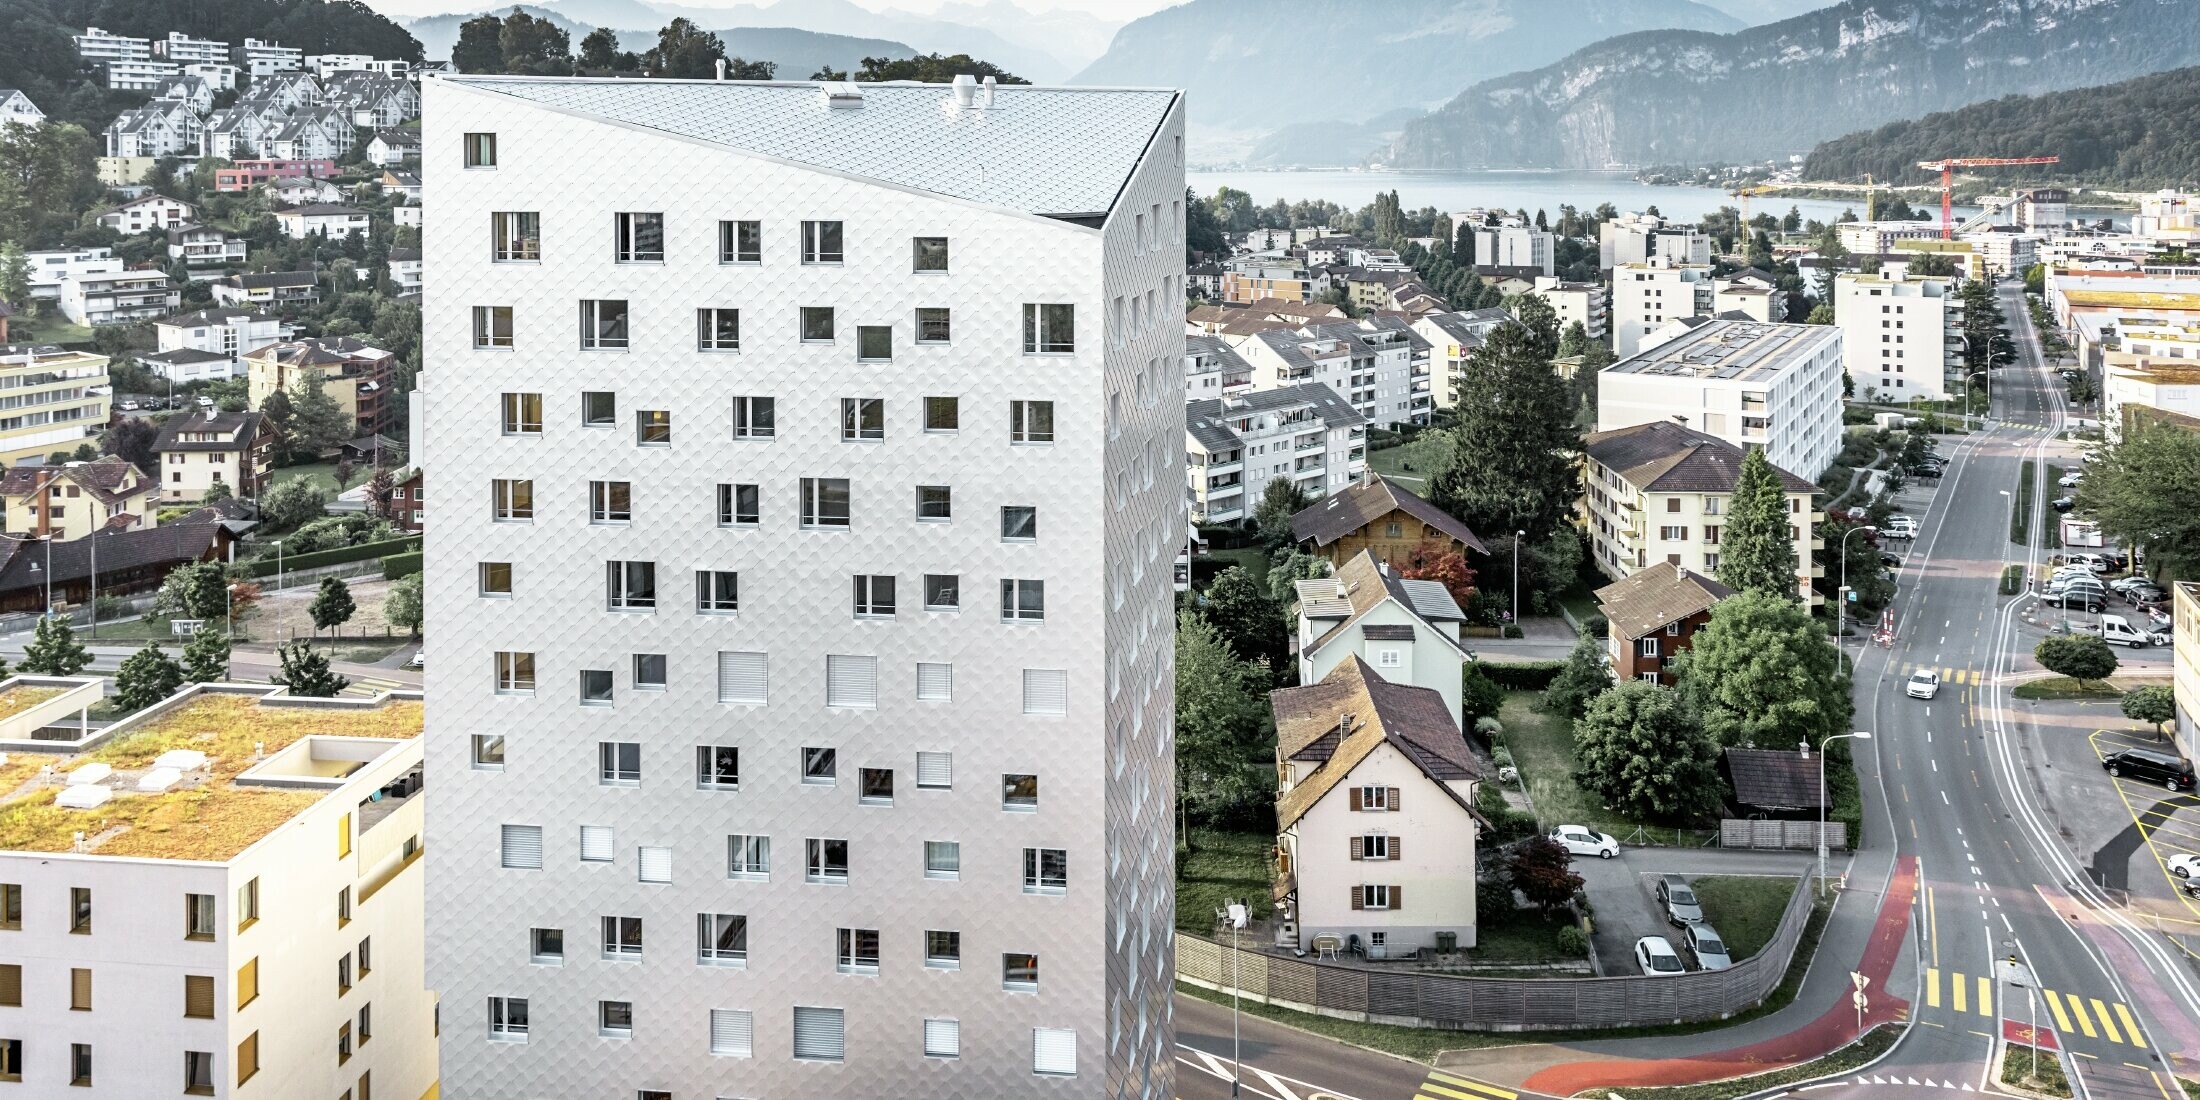 Das Bild zeigt das Solitaire-Hochhaus in Horw, einem Vorort von Luzern, das von der Schweizer Architektin Tilla Theus entworfen wurde. Das Hochhaus hat eine Fassade aus eloxierten Aluminiumrauten, die die Umgebung und die Wolken reflektieren. Die Fenster sind unregelmäßig angeordnet und als 'tanzende Fenster' bekannt. Im Hintergrund sind weitere Gebäude, Straßen und die malerische Berglandschaft der Schweiz zu sehen. Das Hochhaus steht inmitten einer städtischen Umgebung mit einer Mischung aus Wohnhäusern und städtischer Infrastruktur.